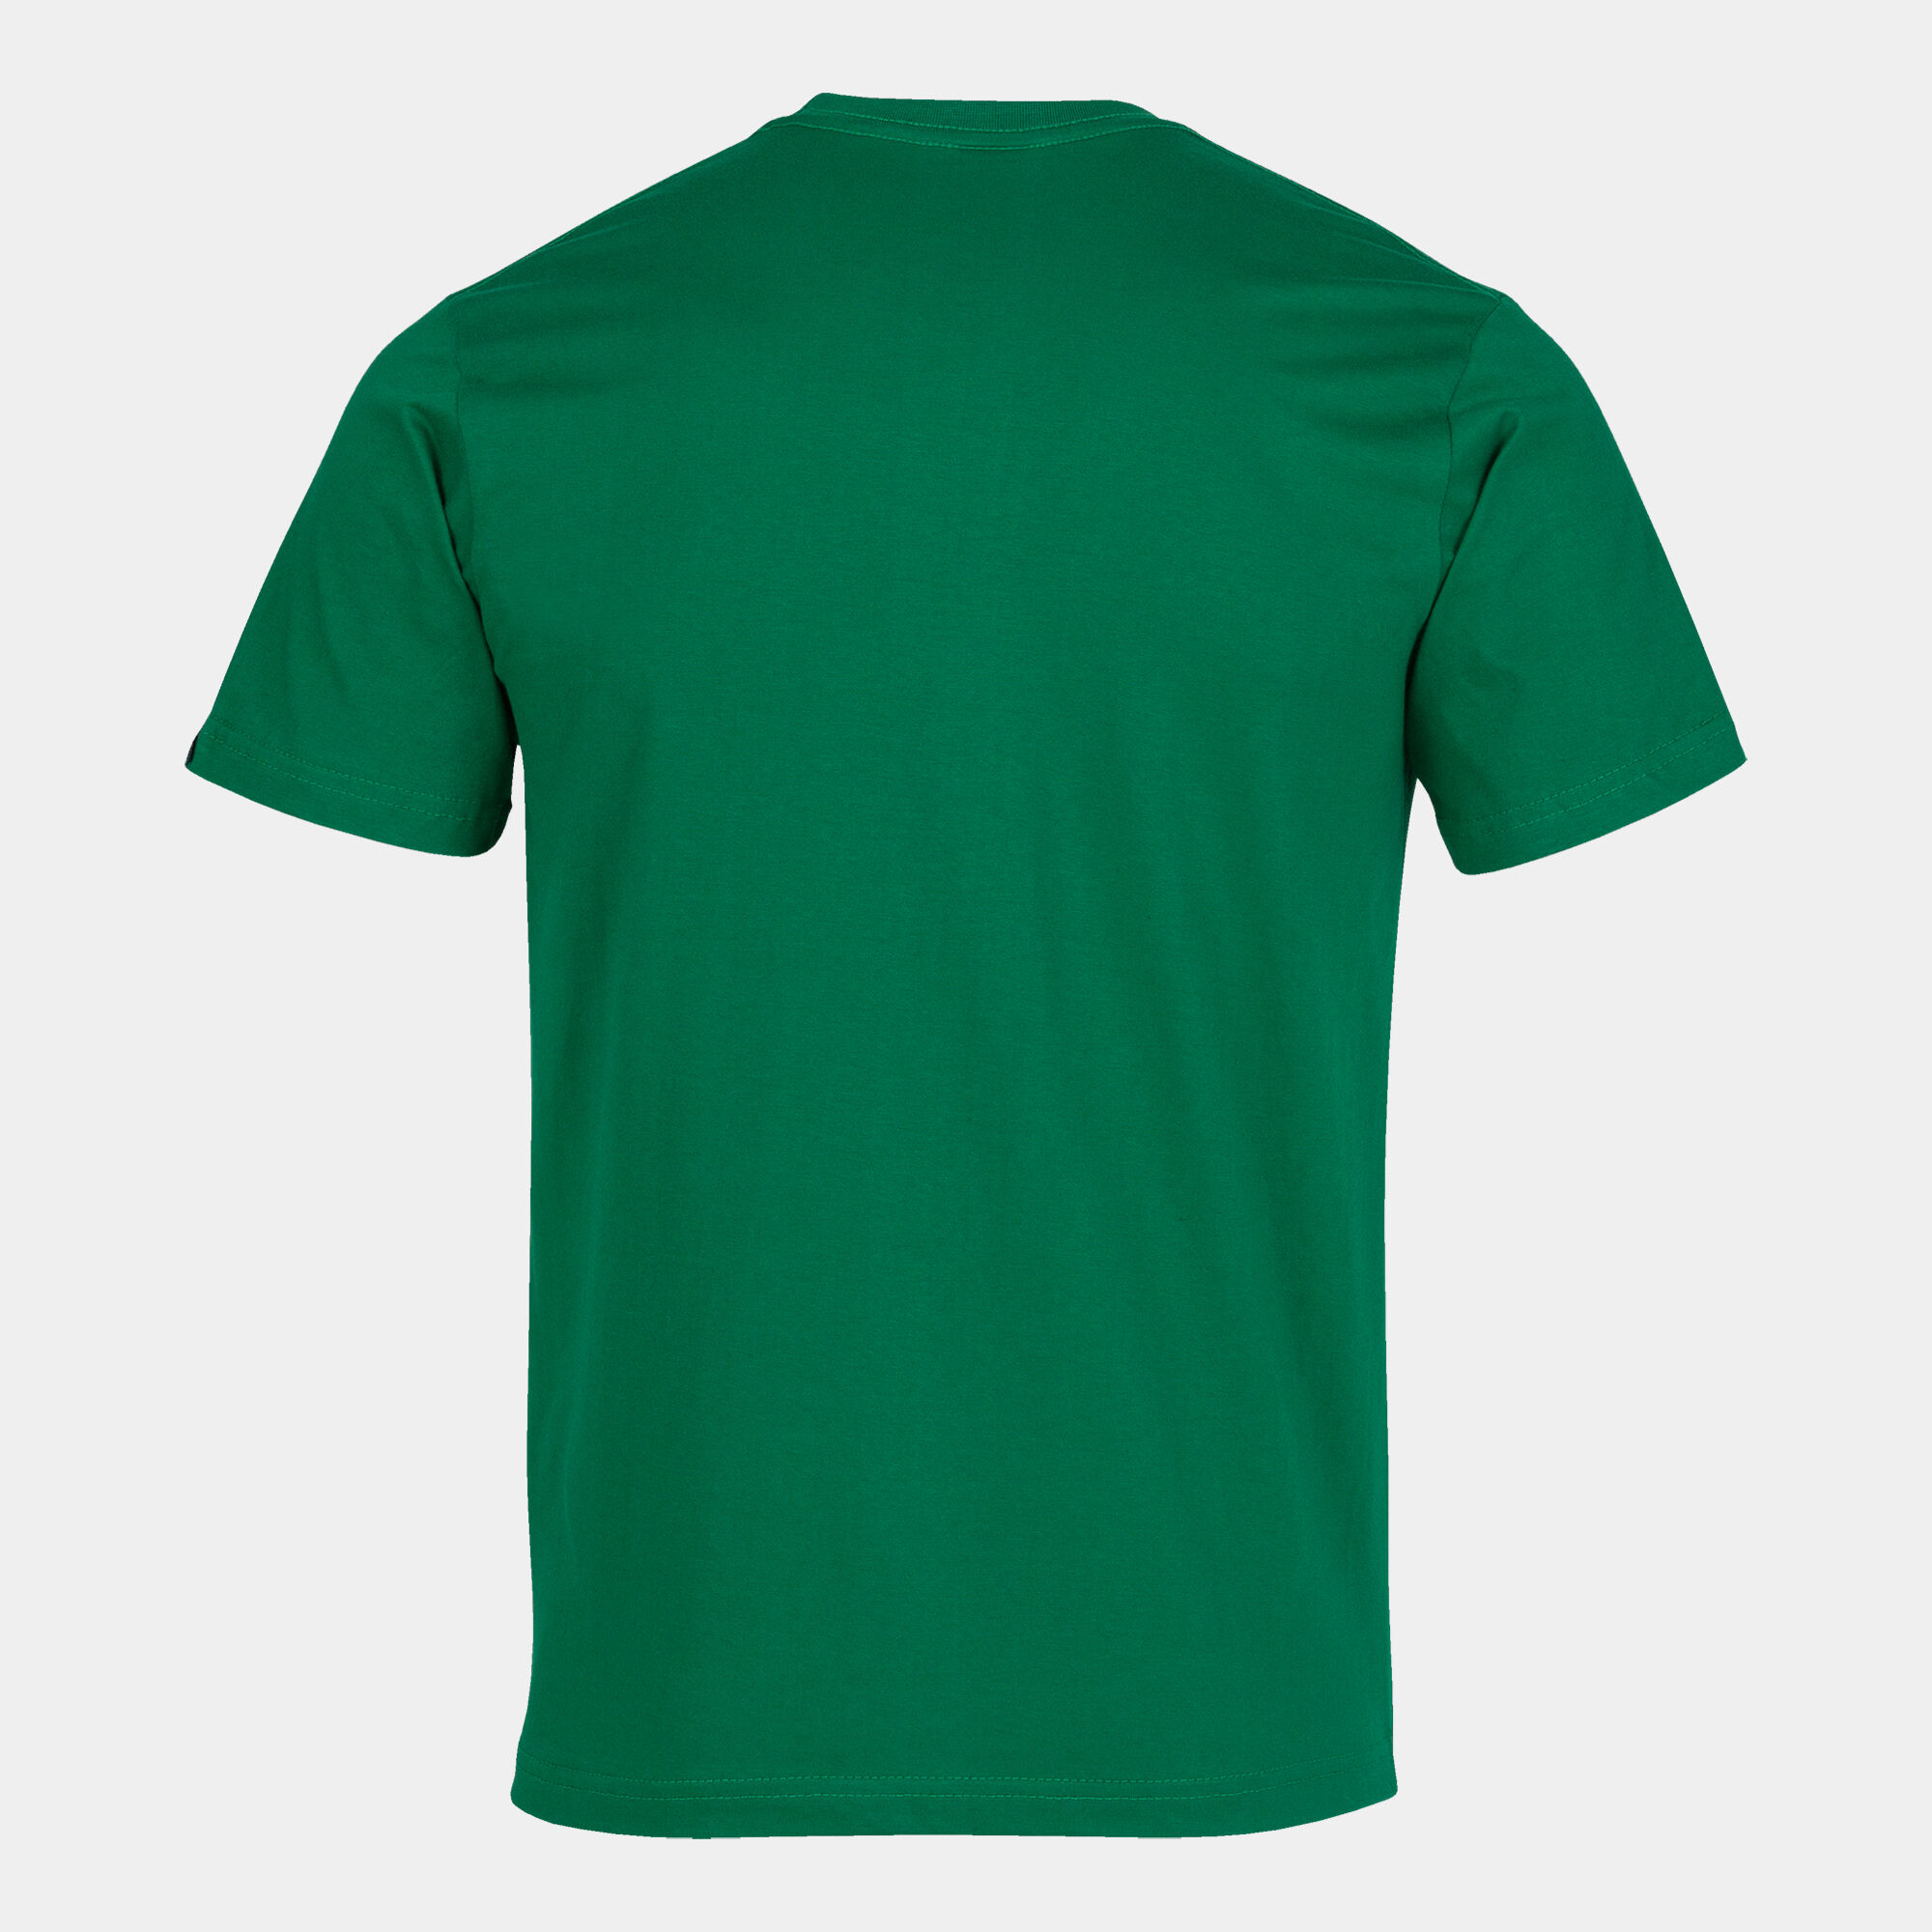 Shirt short sleeve man Desert green